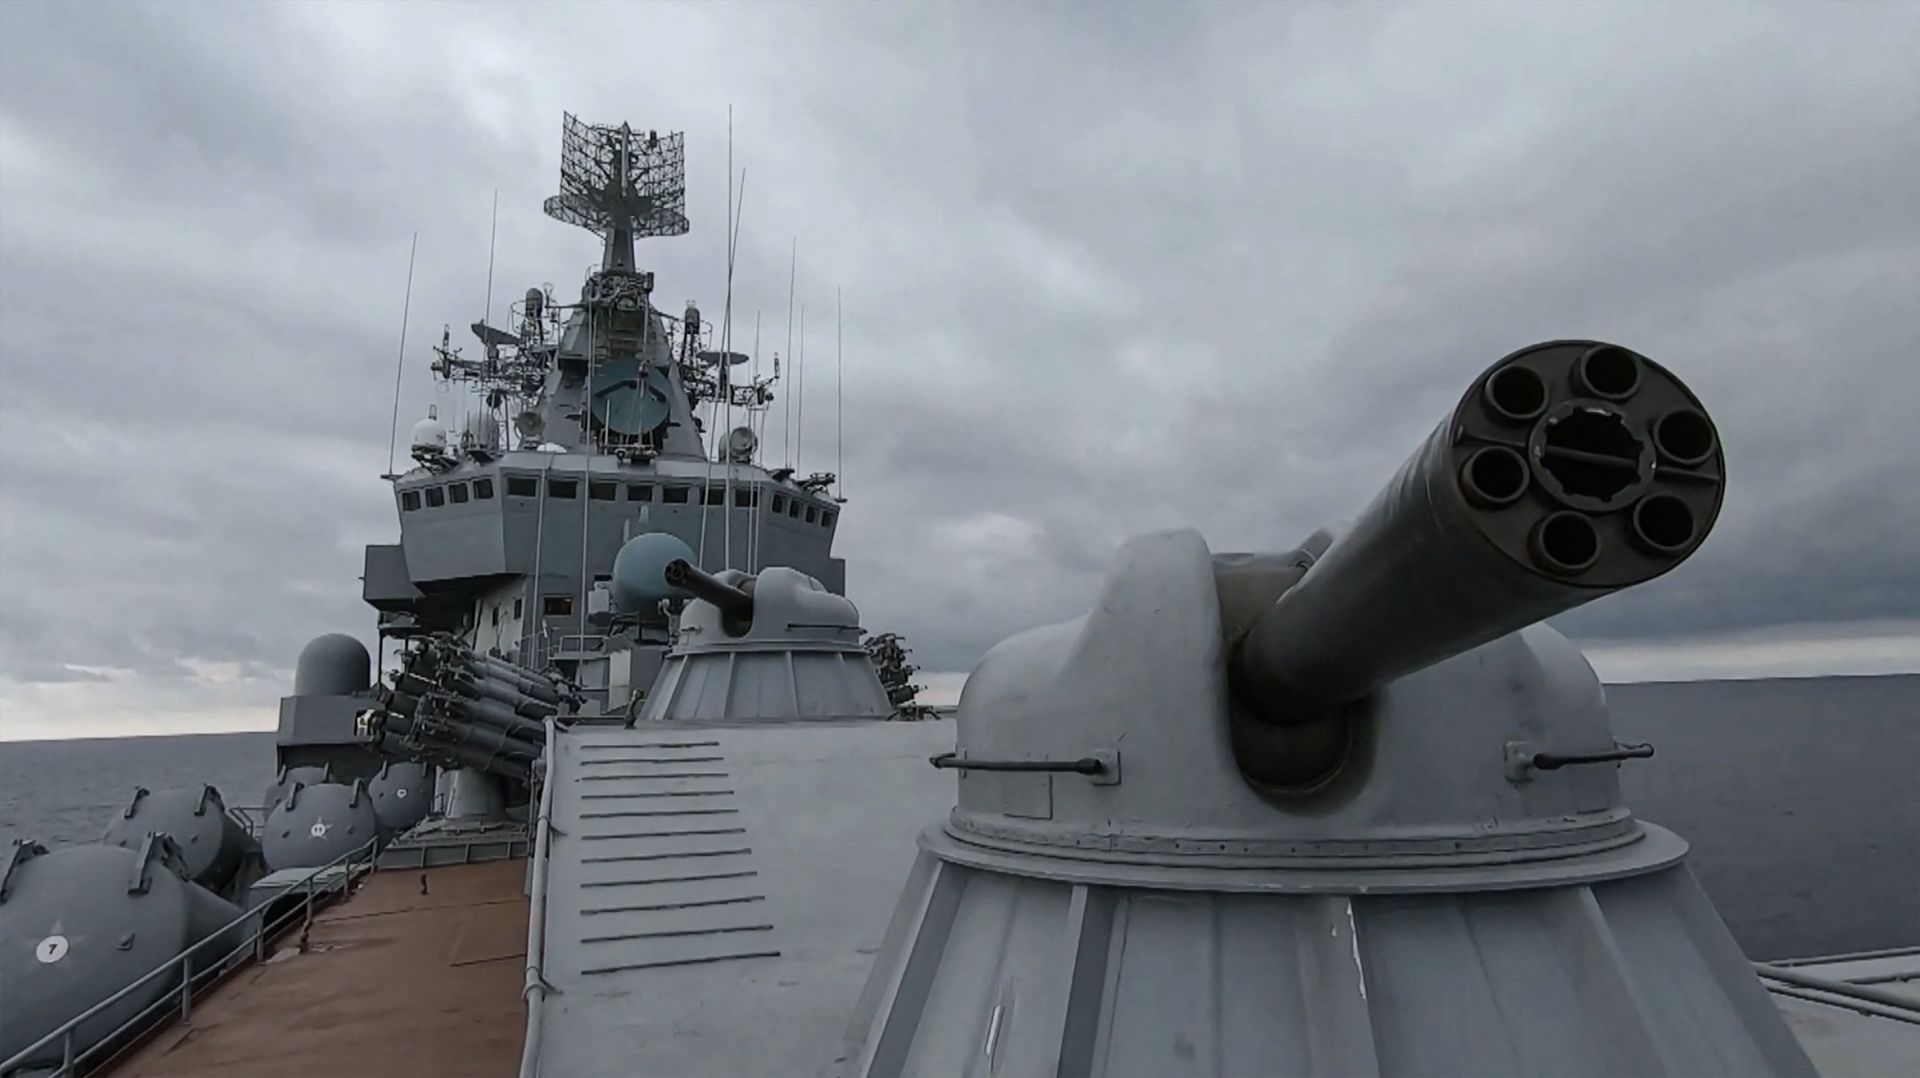 Image tirée d'une vidéo prise et publiée par le ministère russe de la Défense le 18 février 2022 montrant un croiseur russe "Moskva" lors d'exercices navals en mer Noire, à l'extérieur du port de Sébastopol, en Crimée. - Ministère russe de la défense -